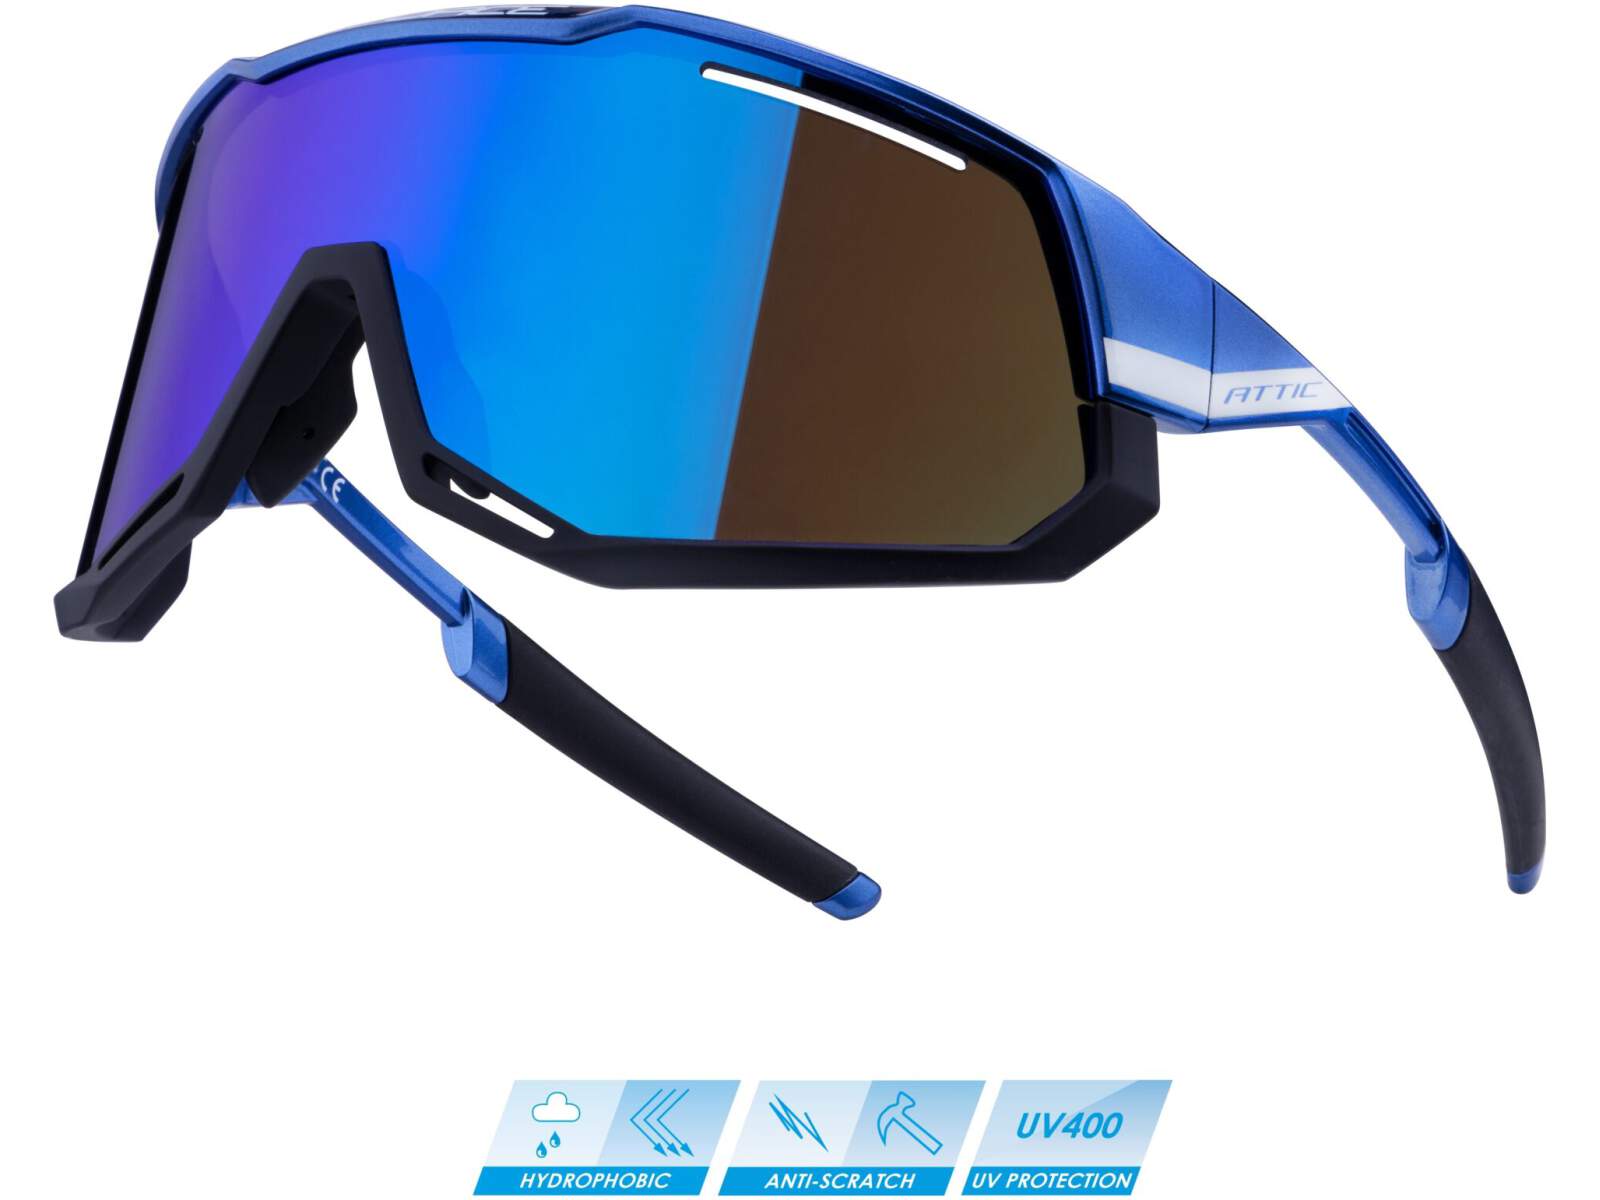 Okulary rowerowe Force ATTIC szkła niebieskie lustrzane